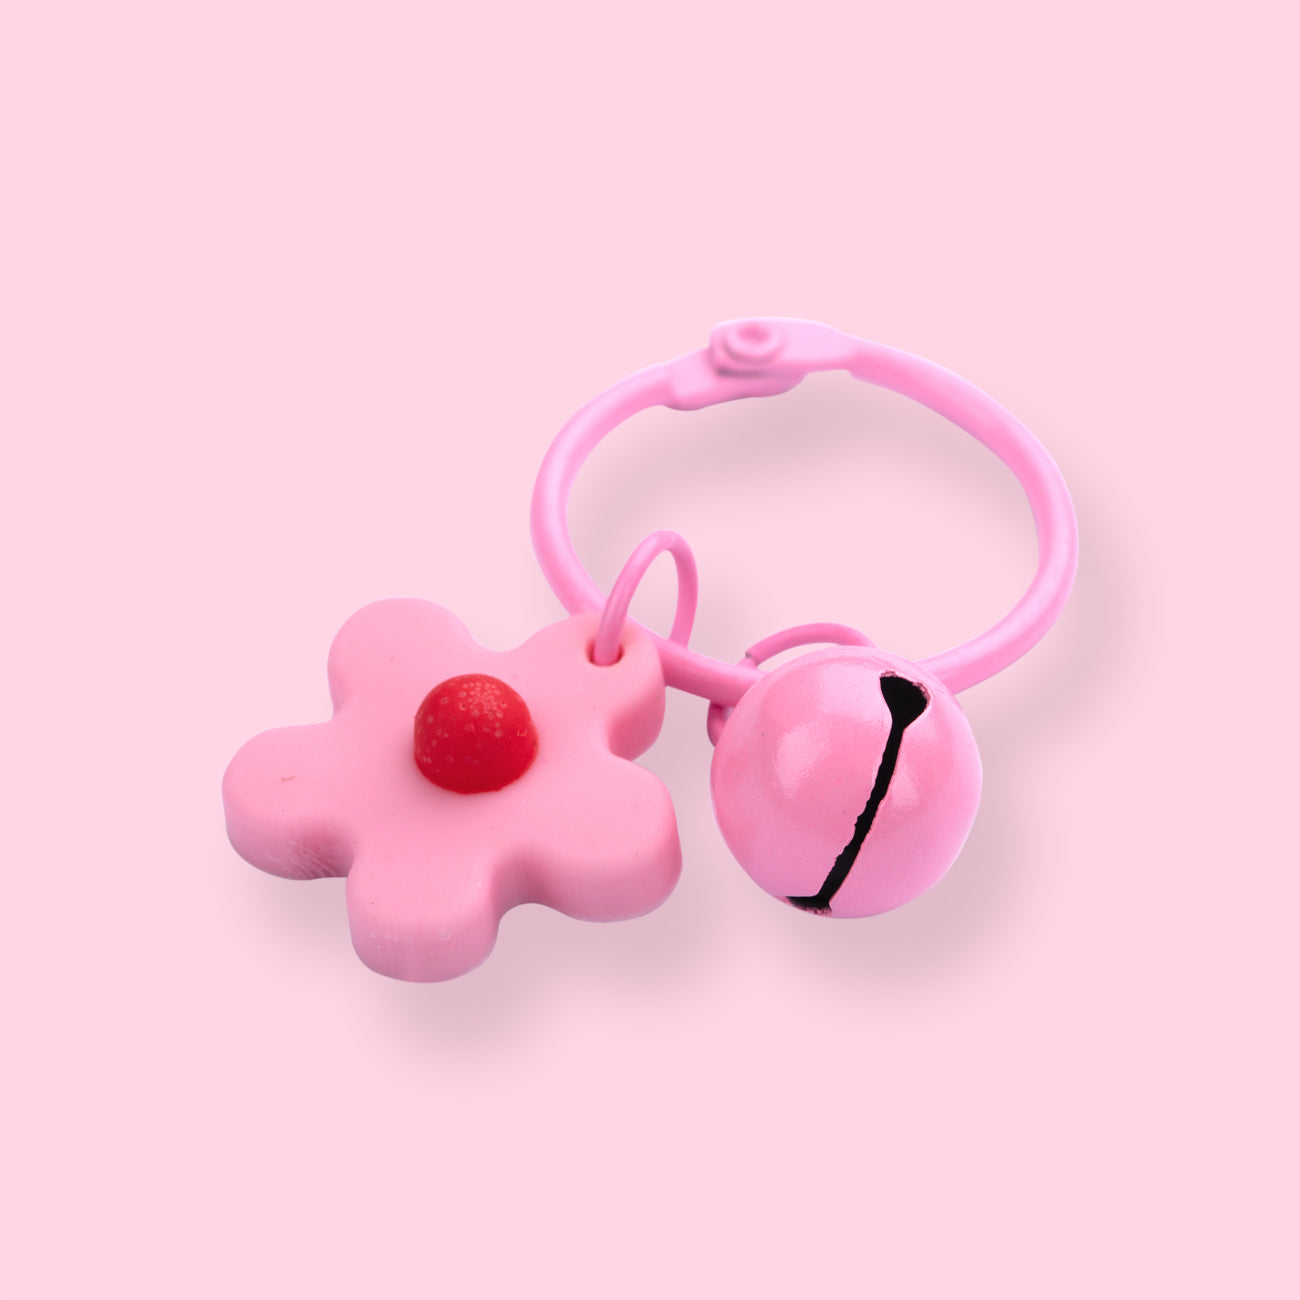 Flower Keychain - Pink